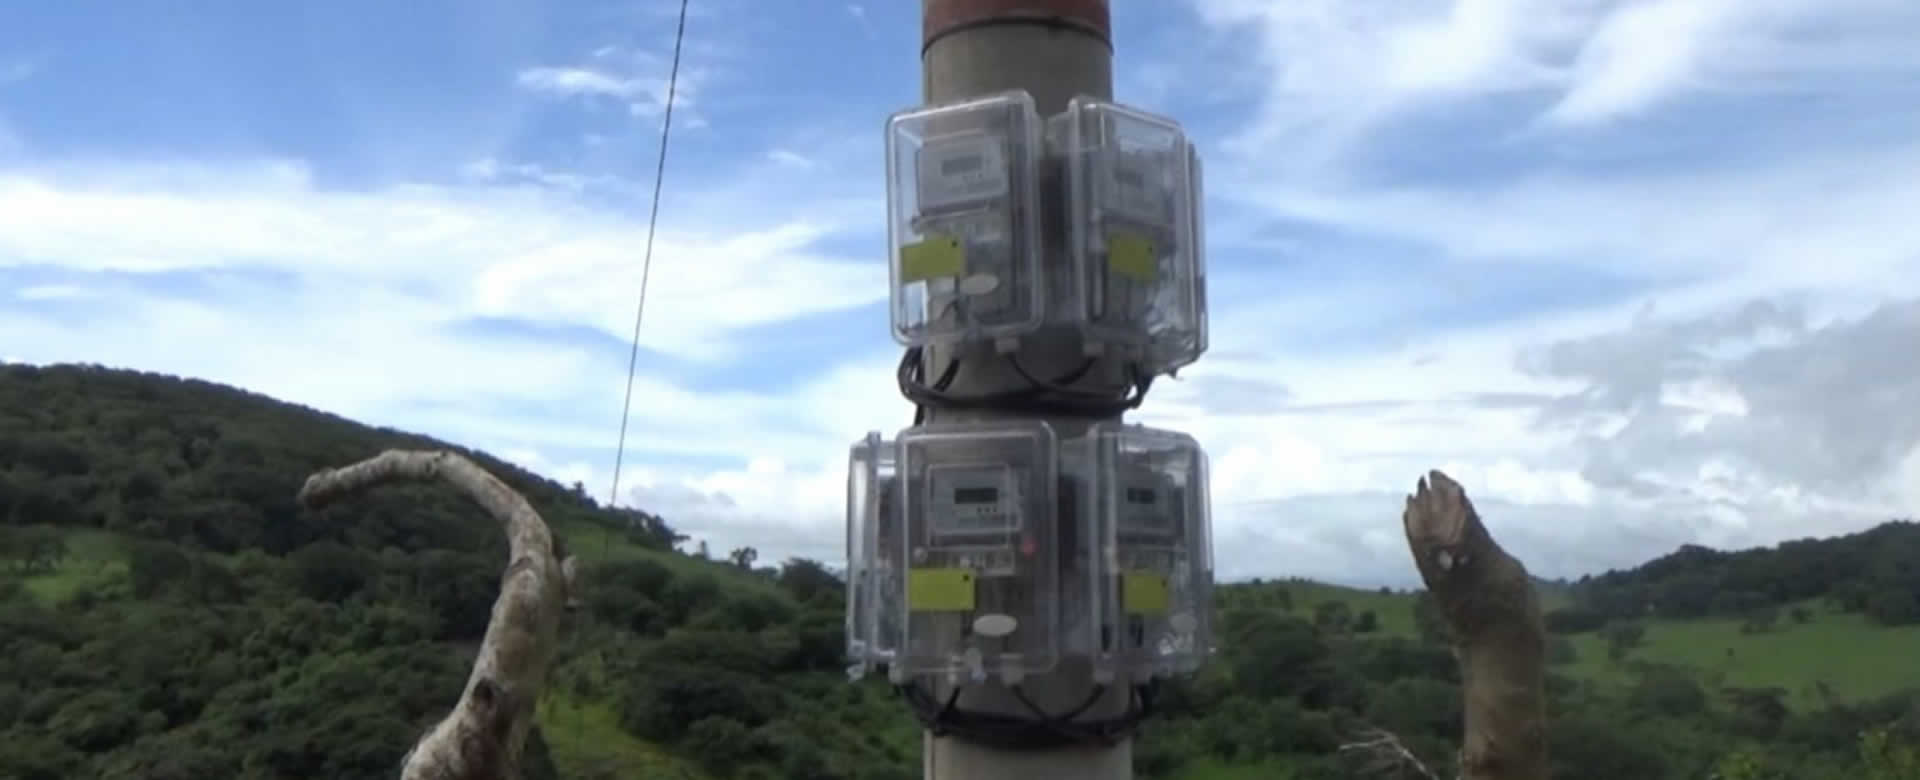 Más familias de Nicaragua cuentan con el servicio de energía eléctrica